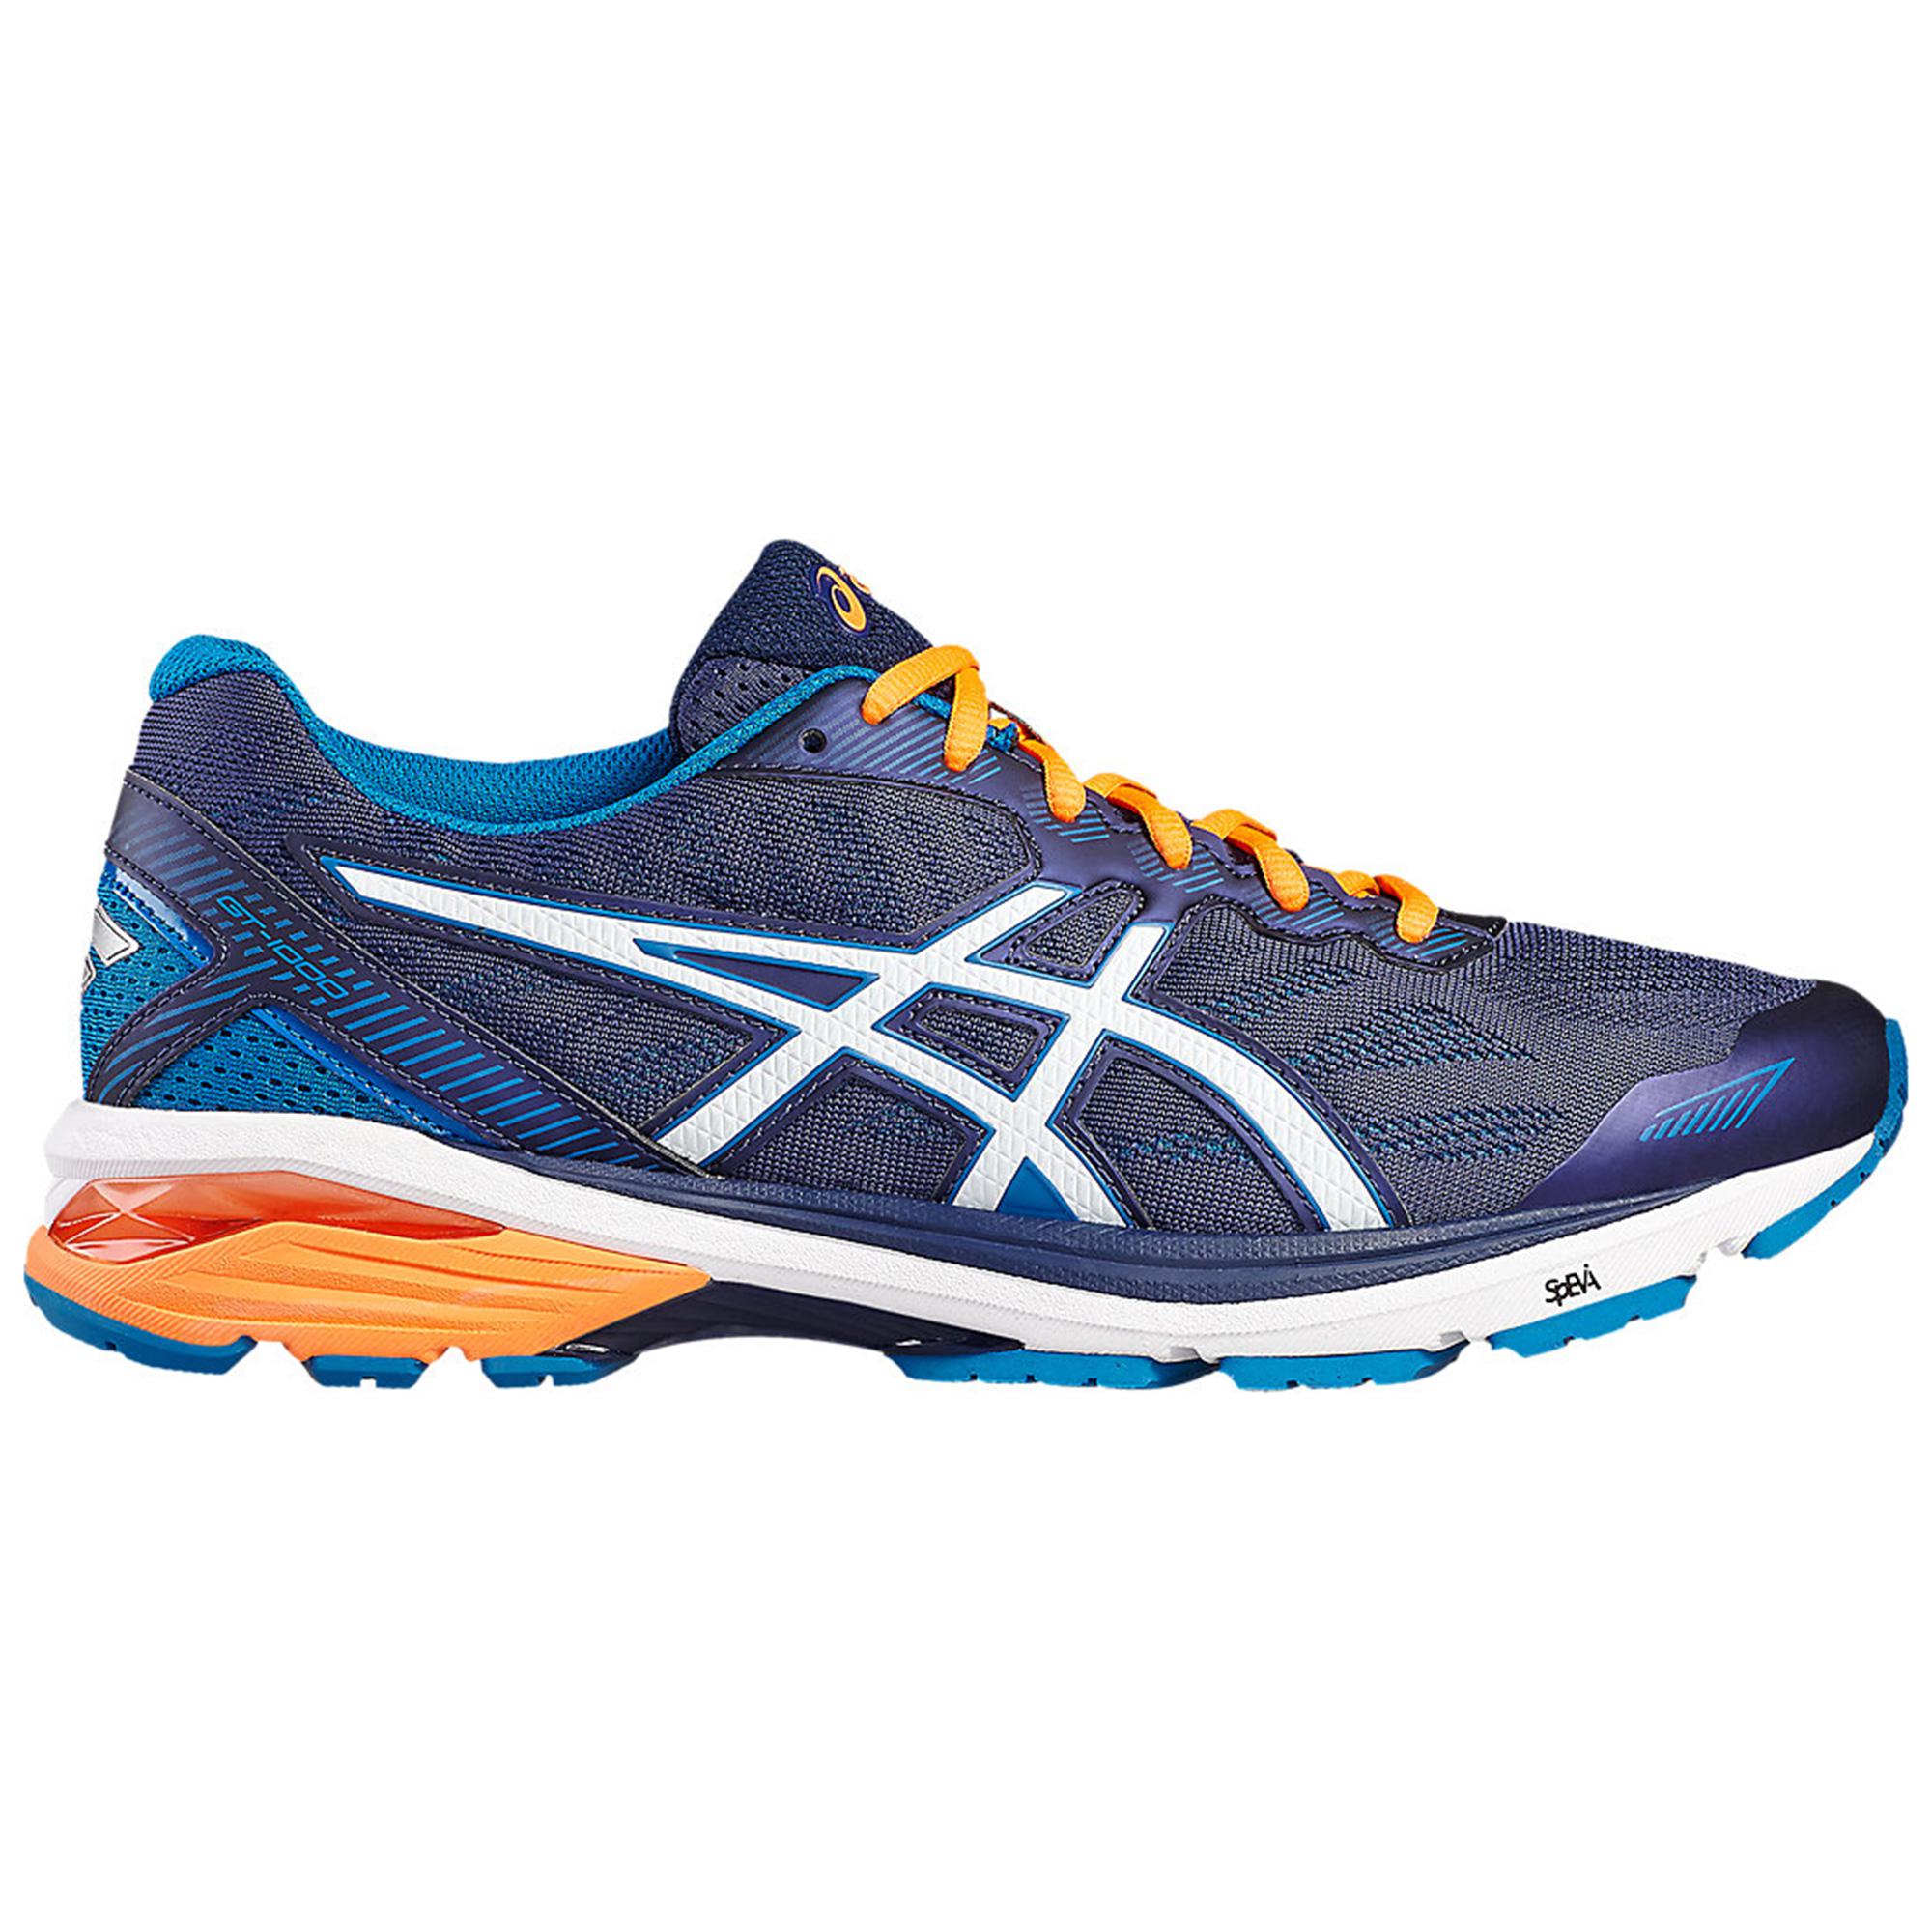 Asics Mens GT-1000 5 Running Shoes - Indigo Blue - Tennisnuts.com